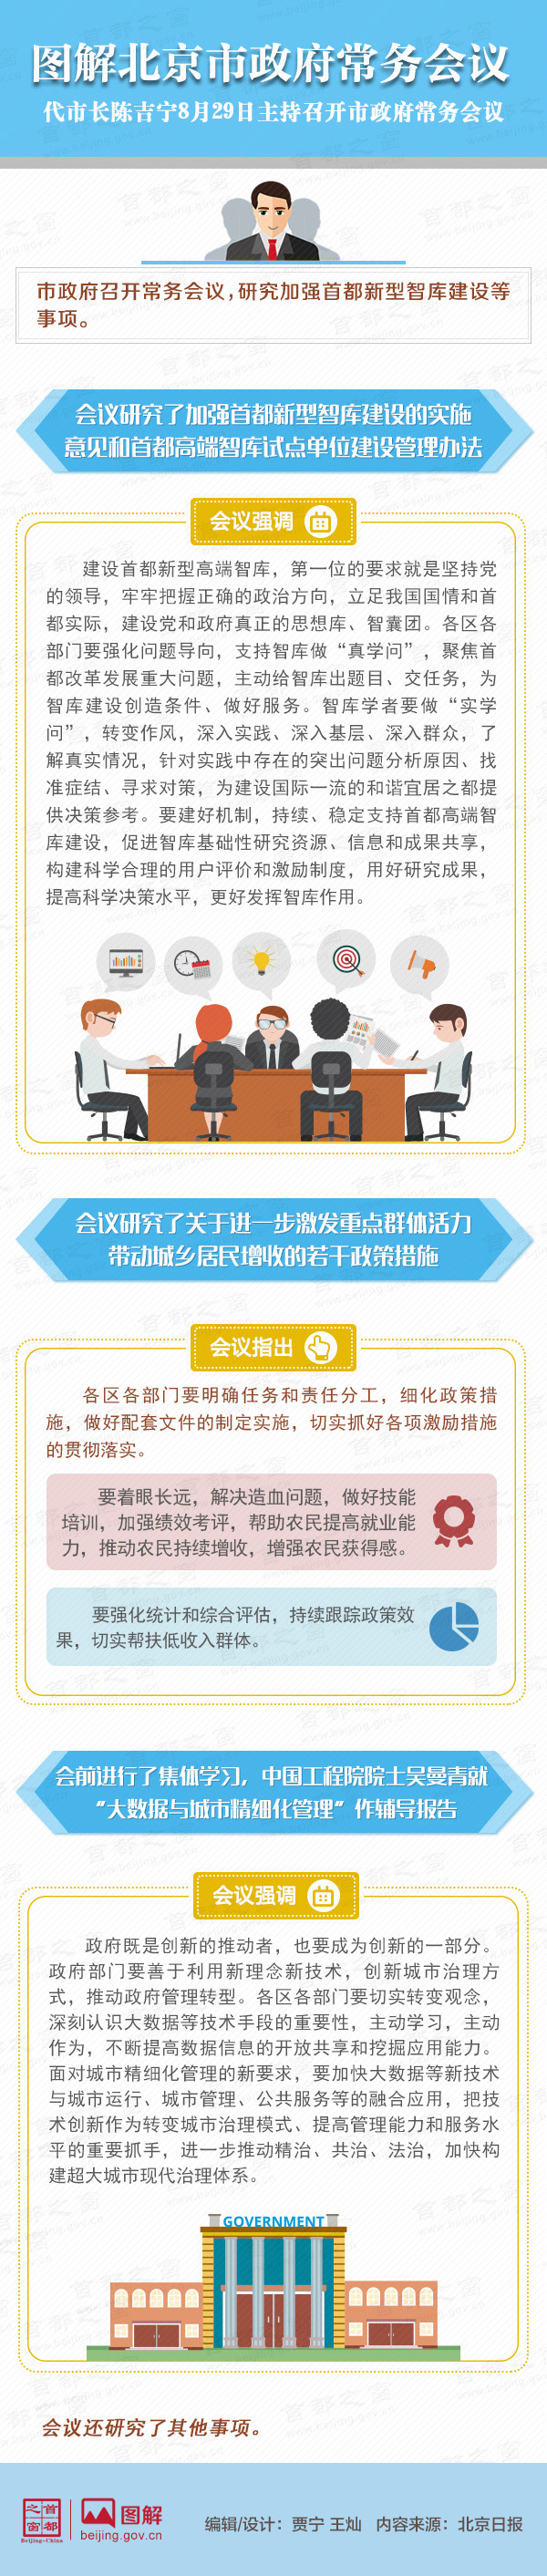 图解2017年8月29日北京市政府常务会议